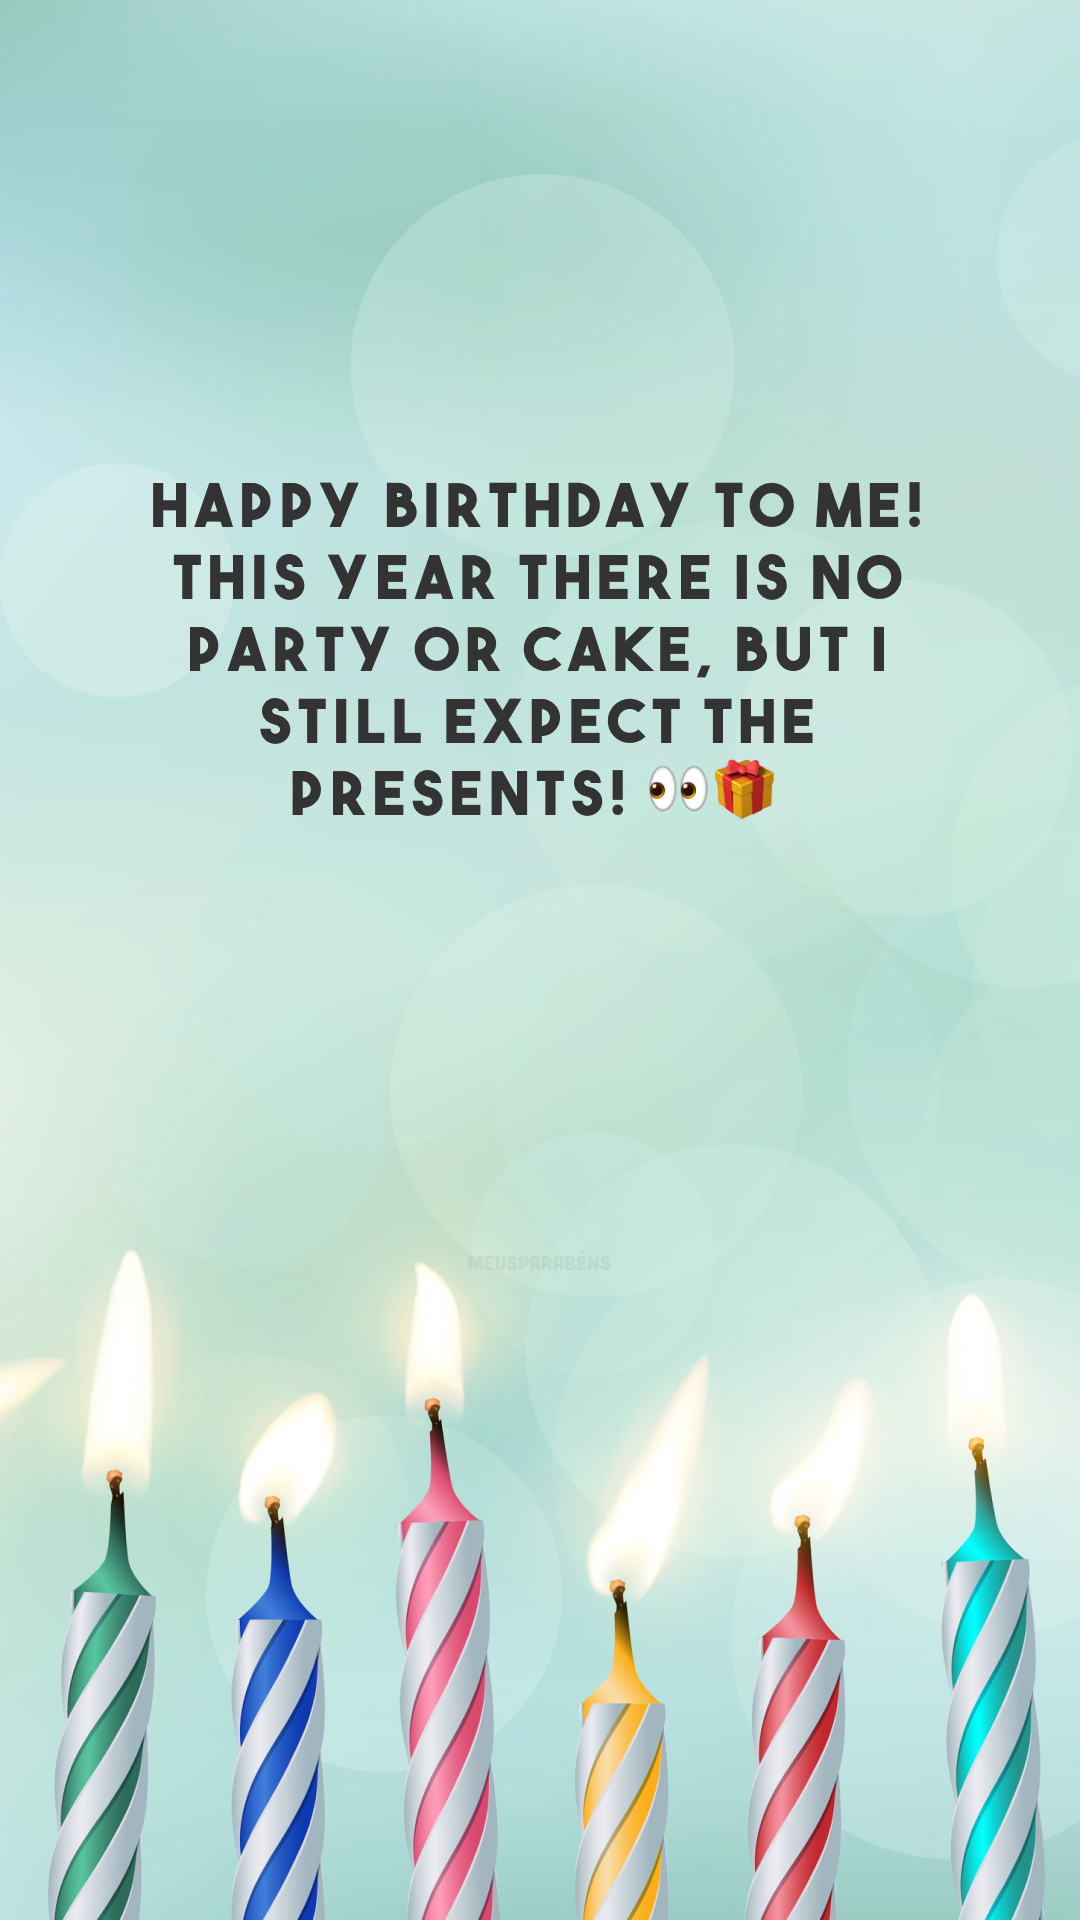 Happy birthday to me! This year there is no party or cake, but I still expect the presents! 👀🎁

<p>(Feliz aniversário pra mim! Este ano não tem festa e nem bolo, mas ainda espero os presentes!)<p>